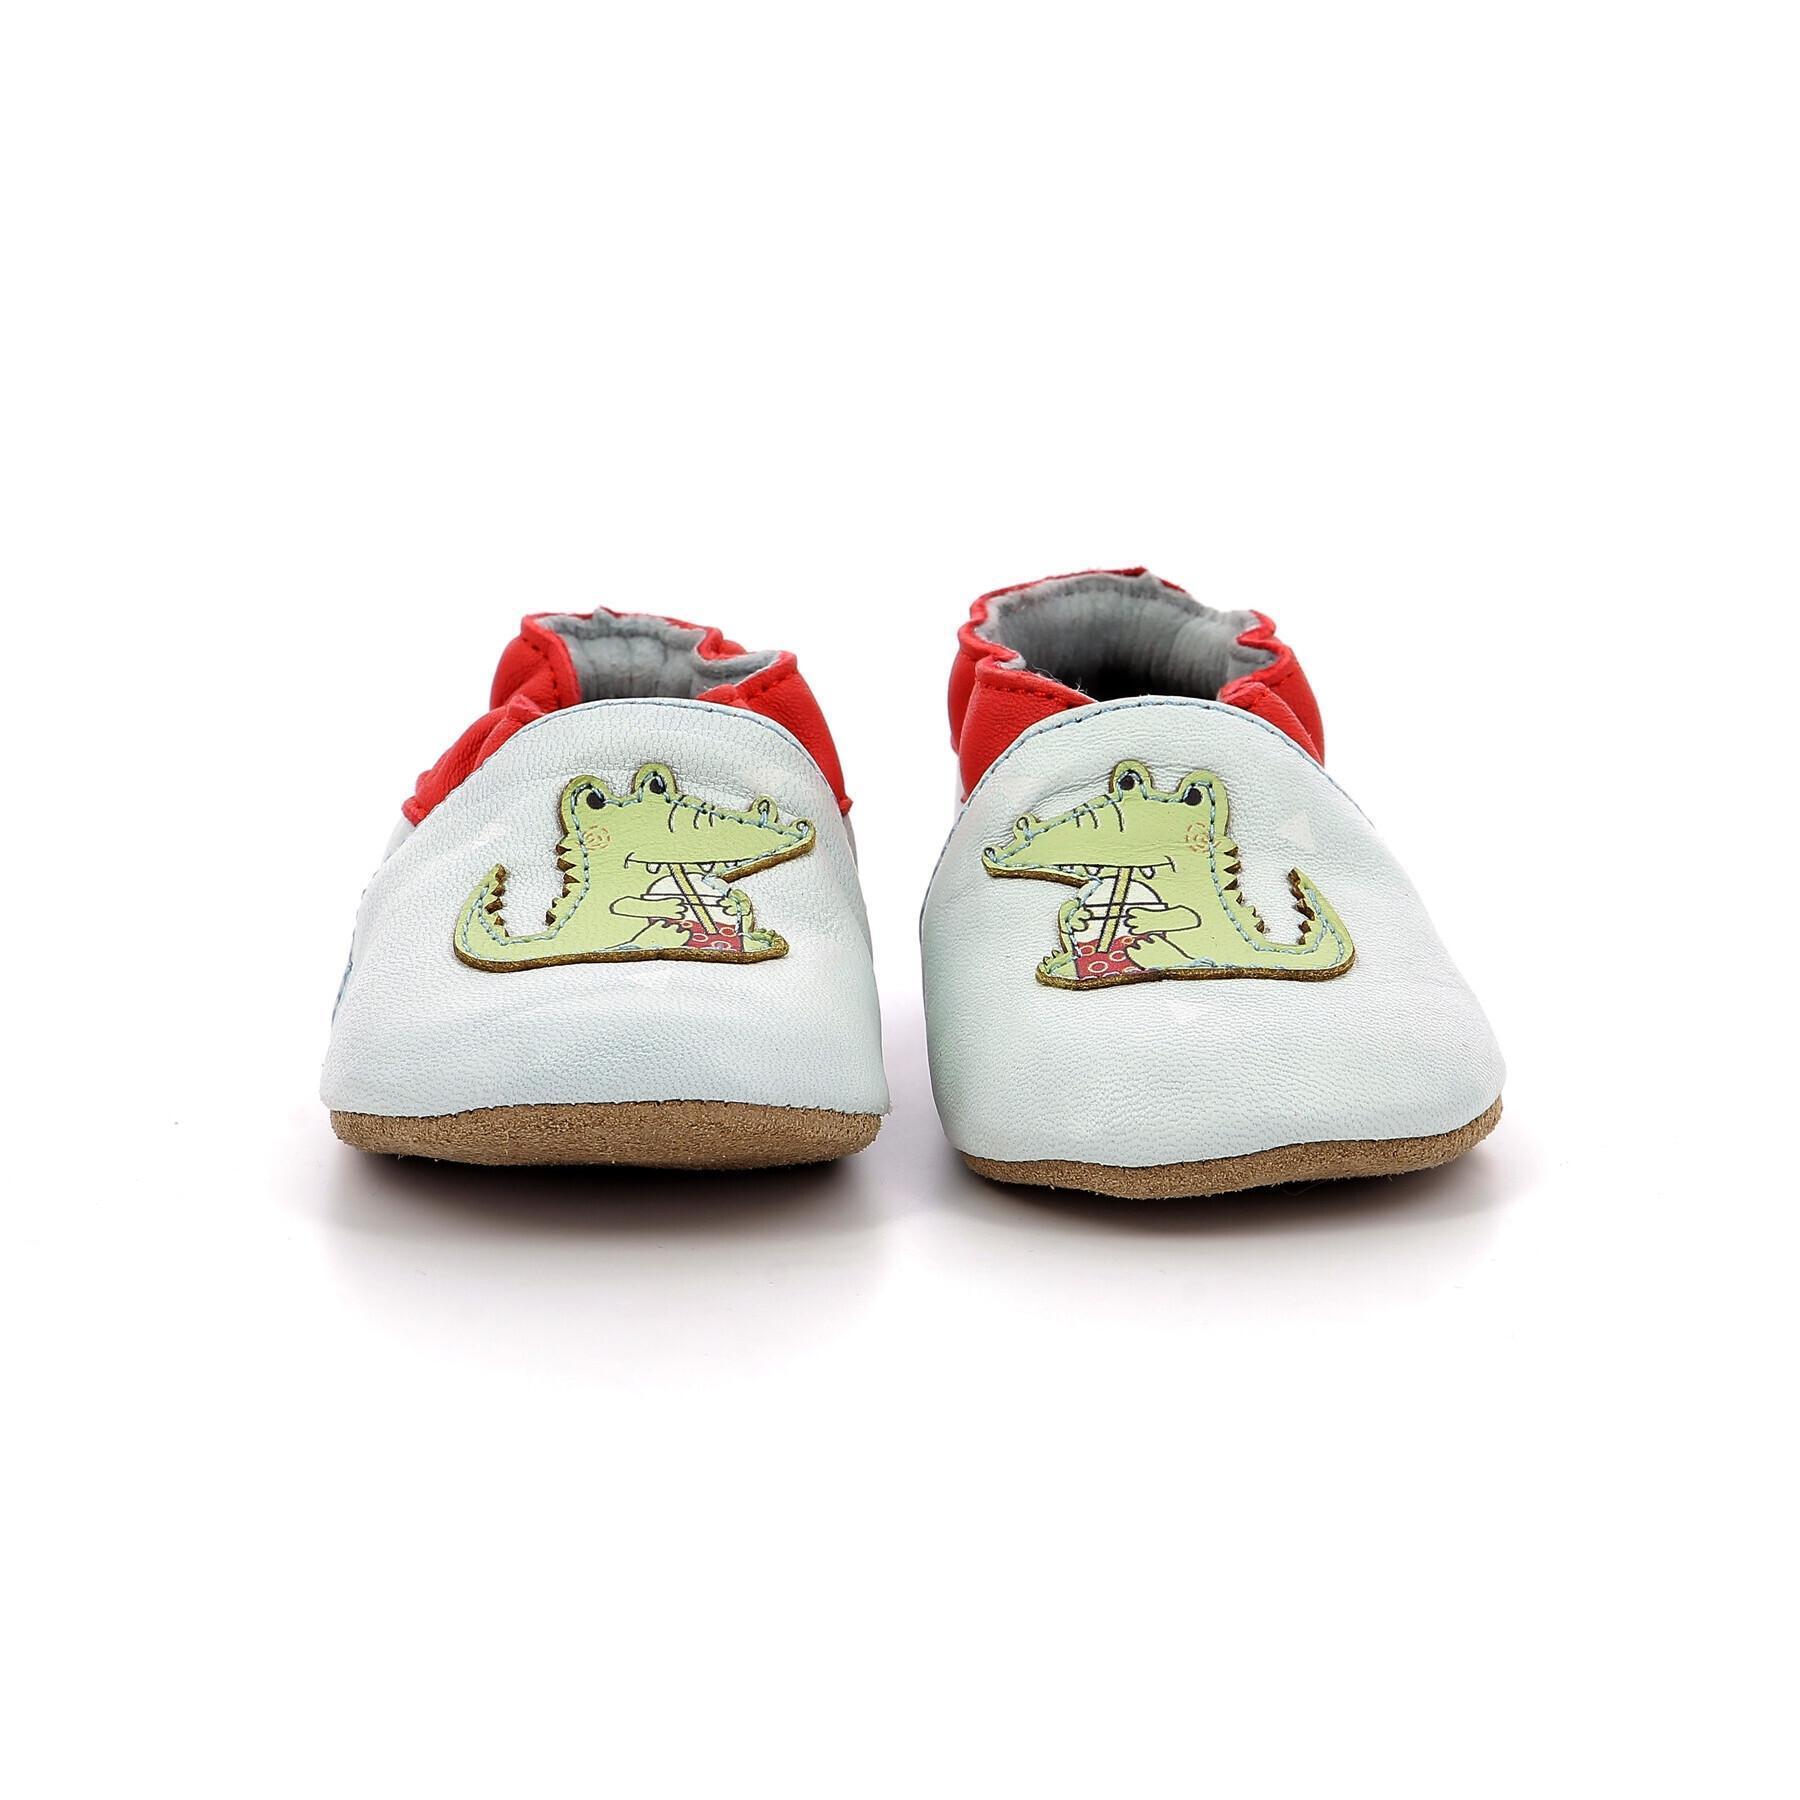 Sandalen voor babyjongens Robeez Relax Croco